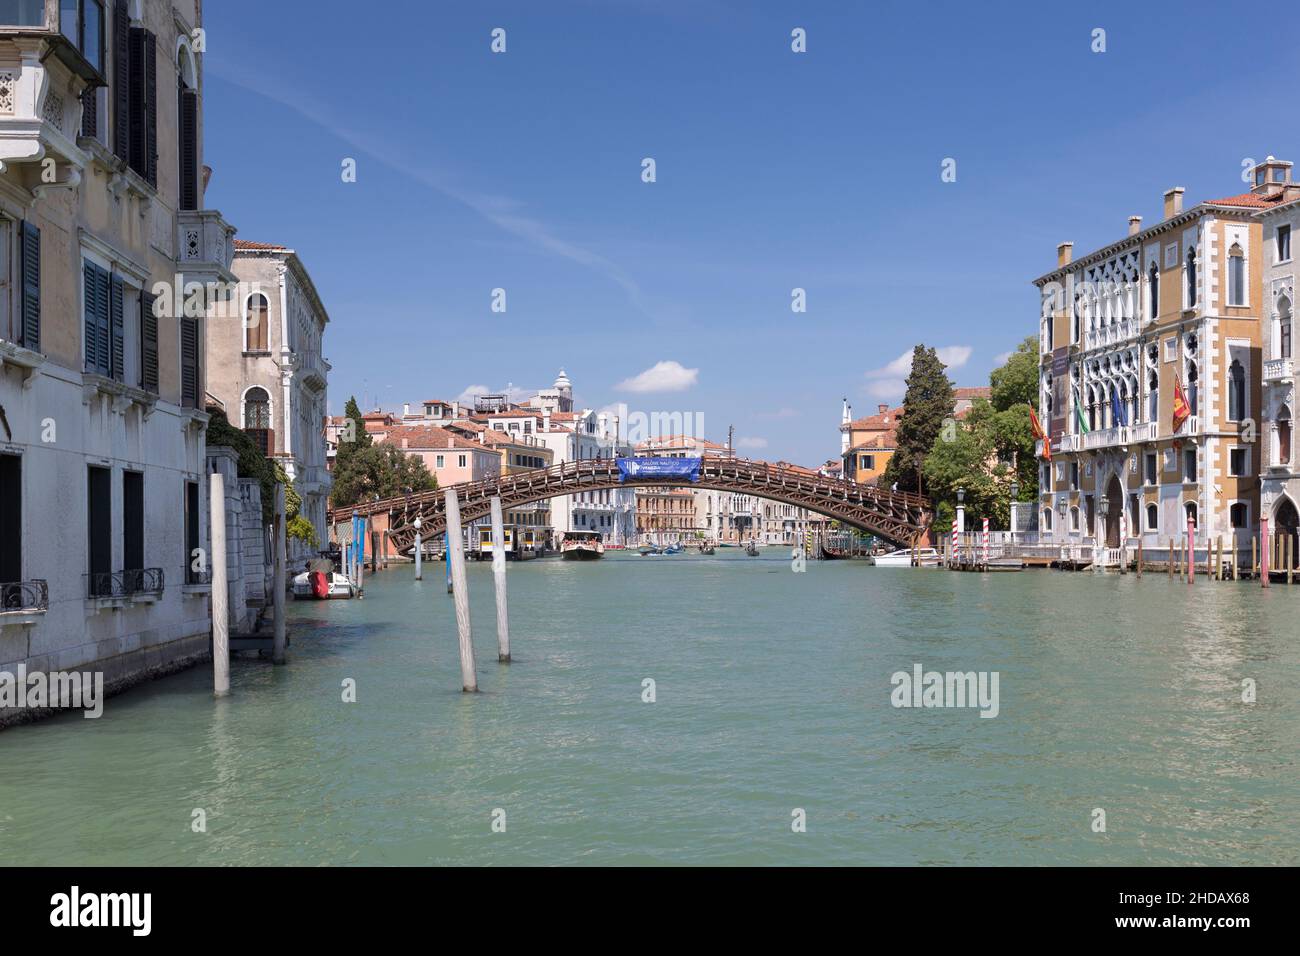 Ponte della Accademia, Accademia bridge, Venice, Italy Stock Photo